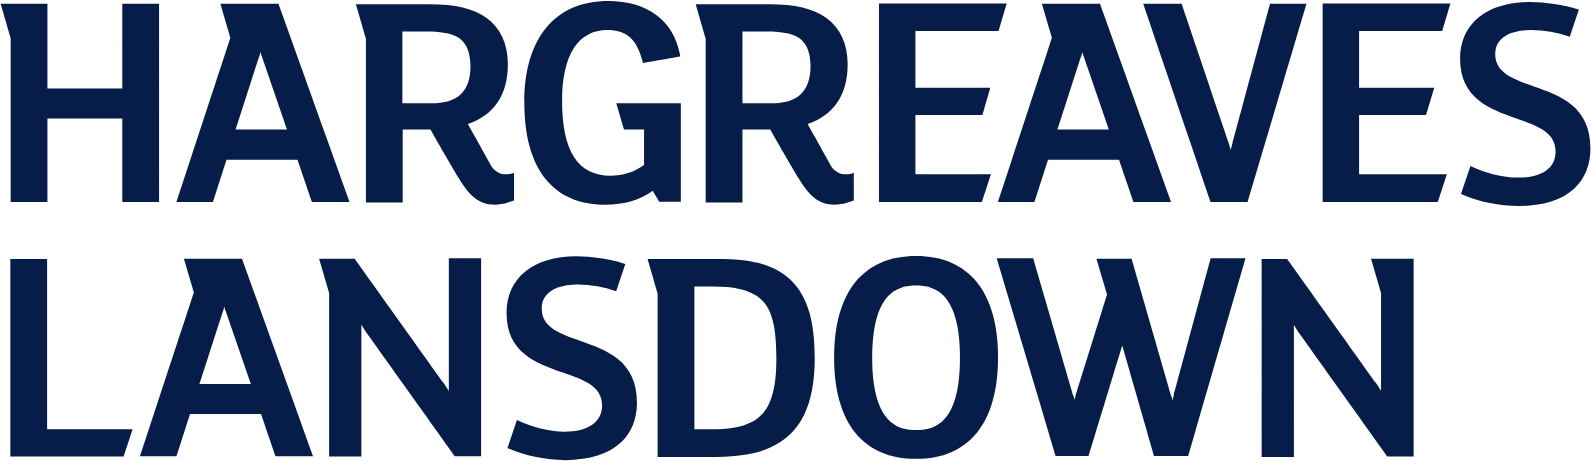 Hargreaves Lansdown logo large (transparent PNG)